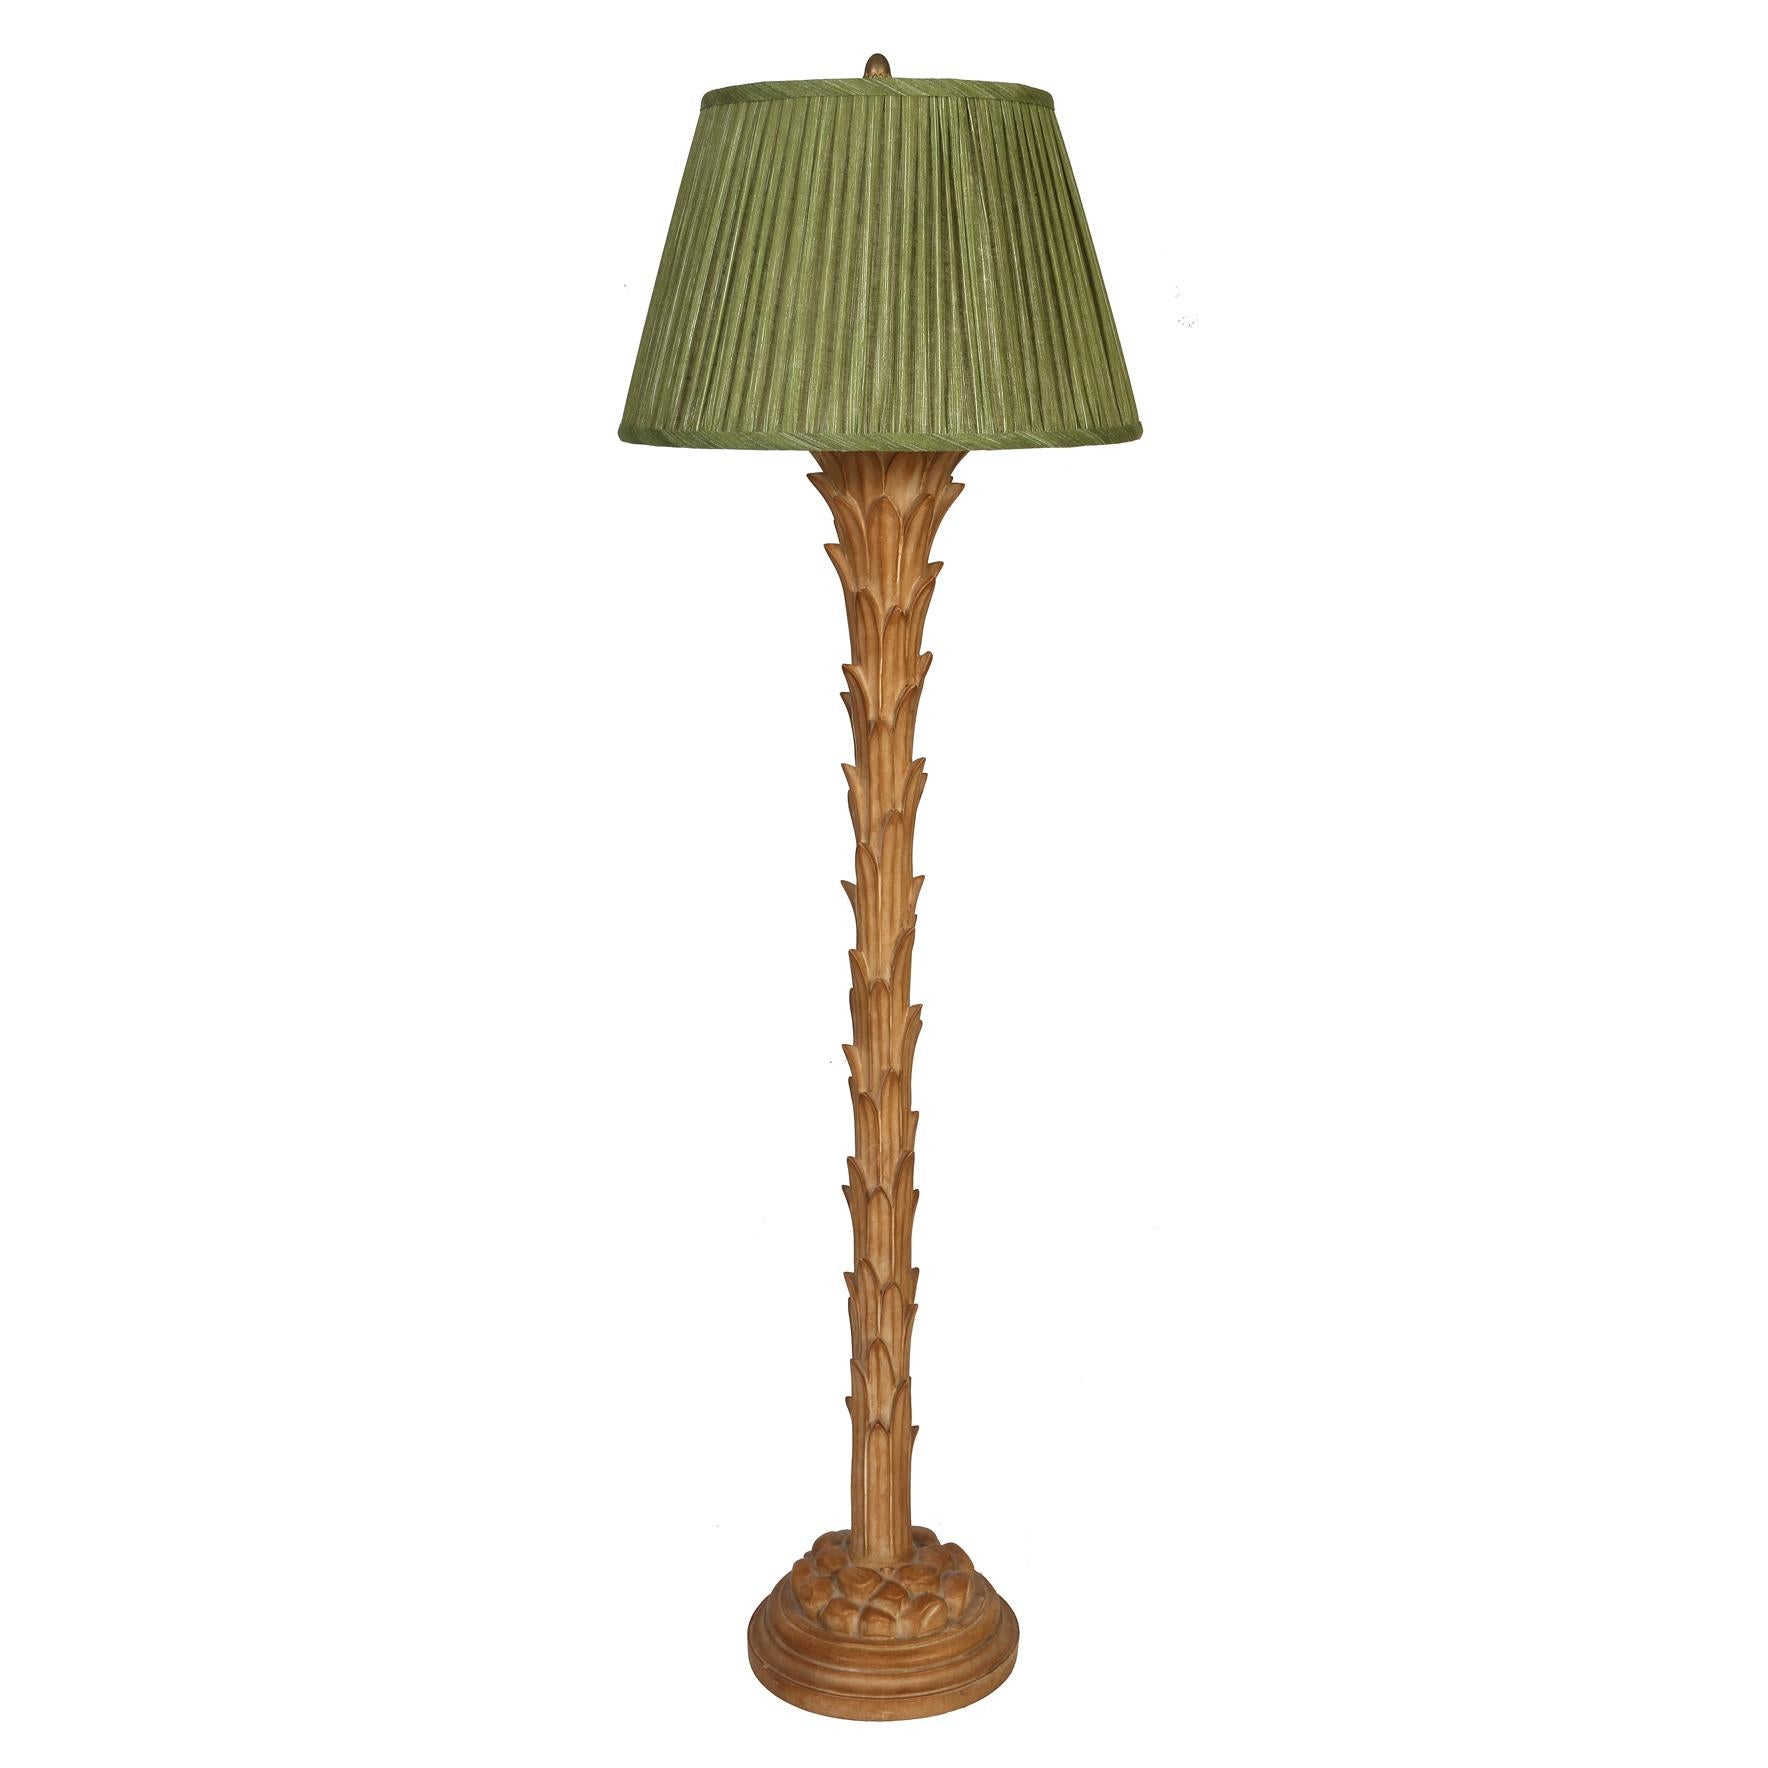 Eine Stehlampe mit Palmblatt im Vintage-Stil von Serge Roche. Die Stehlampe mit Palmblatt verkörpert den Geist der unverwechselbaren Designs von Roche und verbindet Opulenz und Launenhaftigkeit in perfekter Harmonie. Hier die neutral getönte